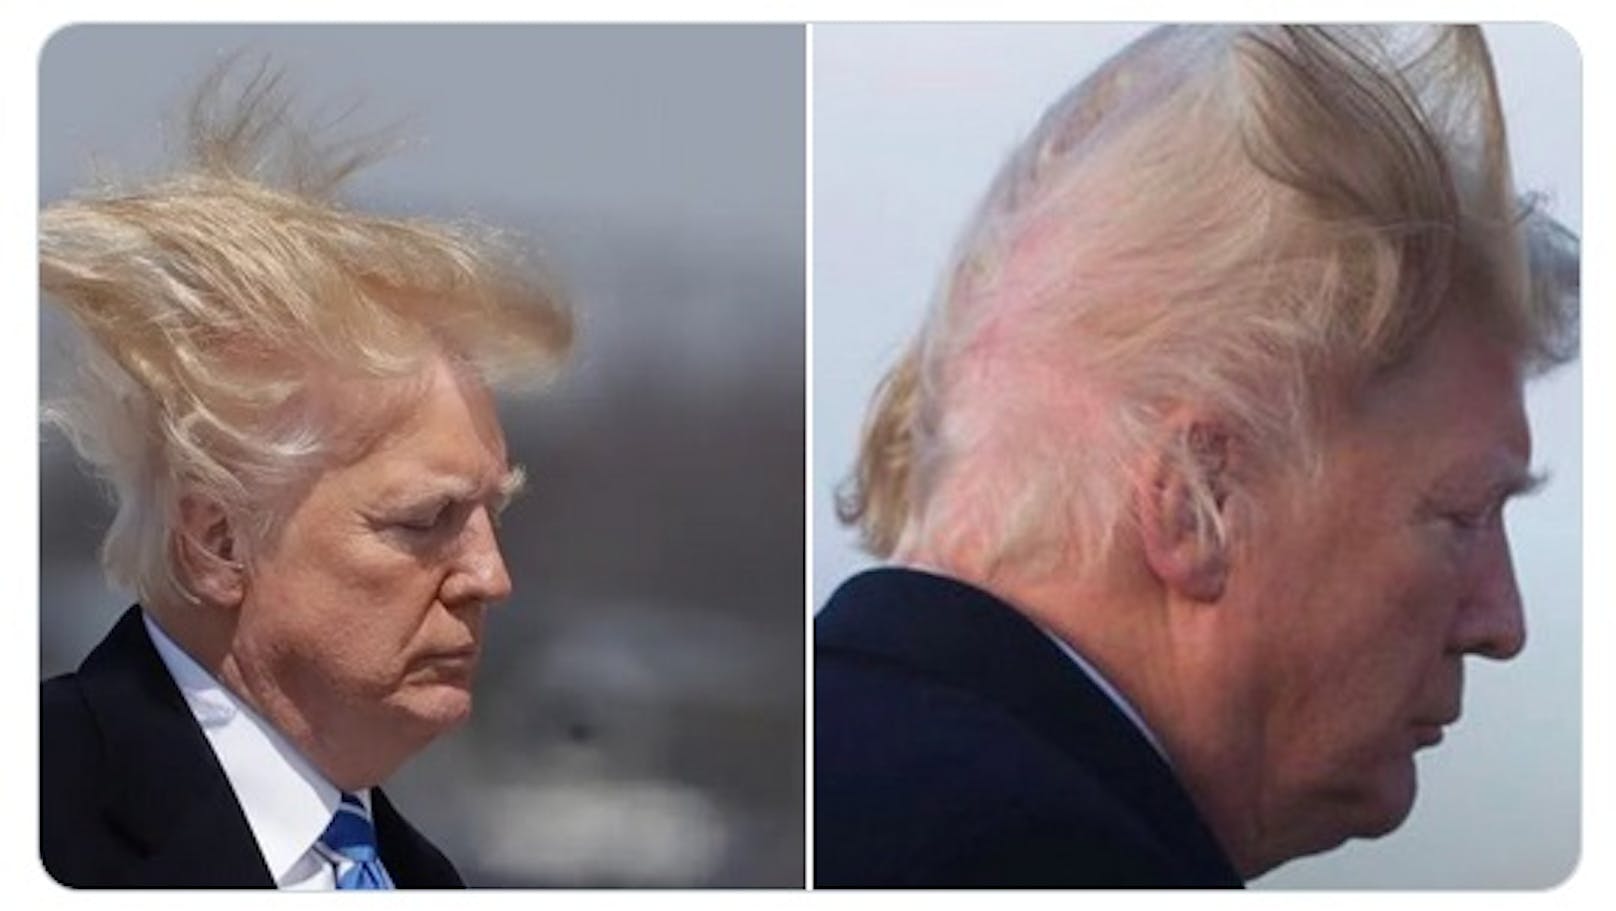 "Trump zahlt 70.000$, damit seine Haare so aussehen?"